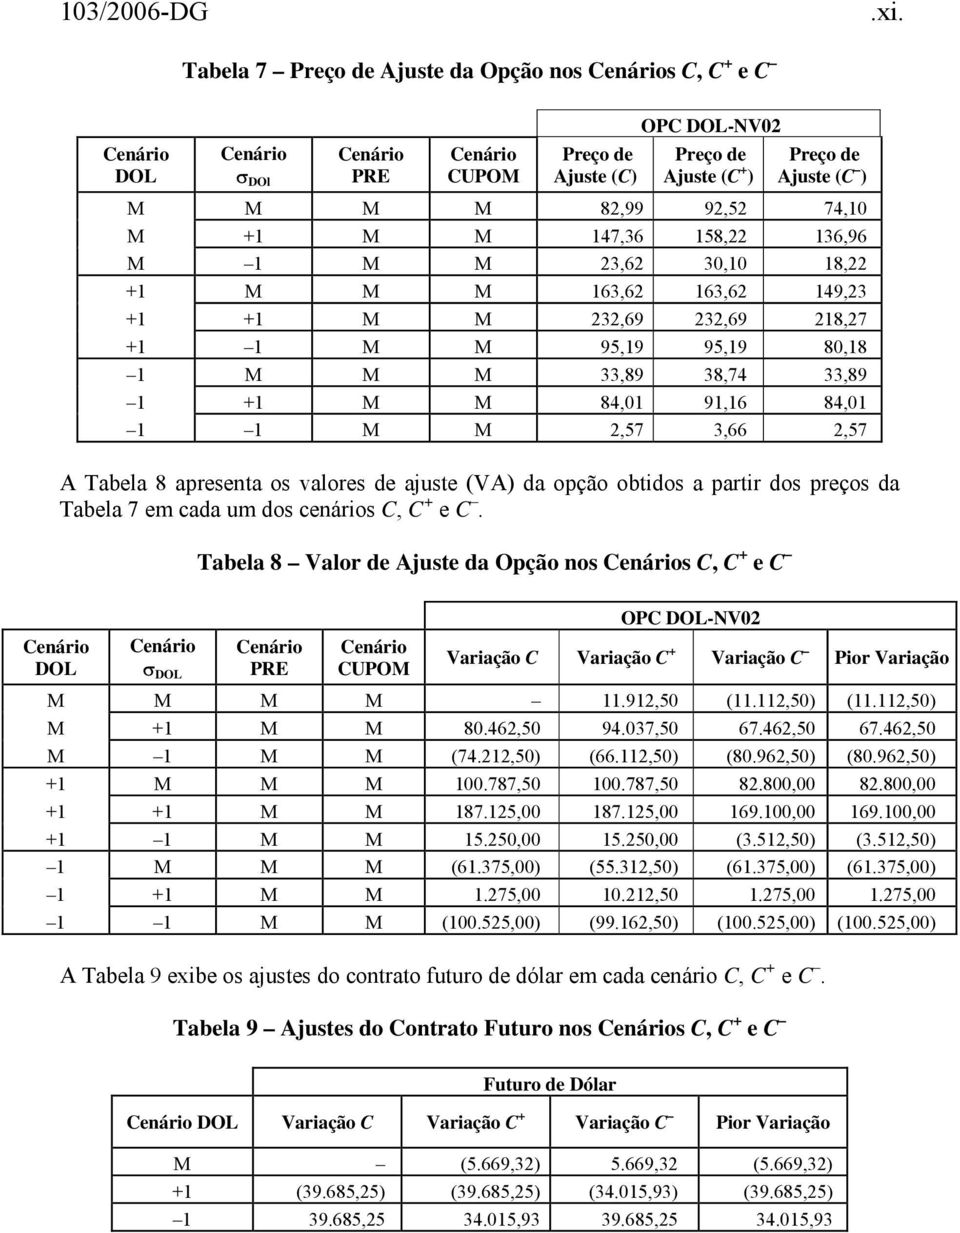 2,57 A Tabela 8 apresenta os valores de ajuste (VA) da opção obtidos a partir dos preços da Tabela 7 em cada um dos cenários C, C + e C.